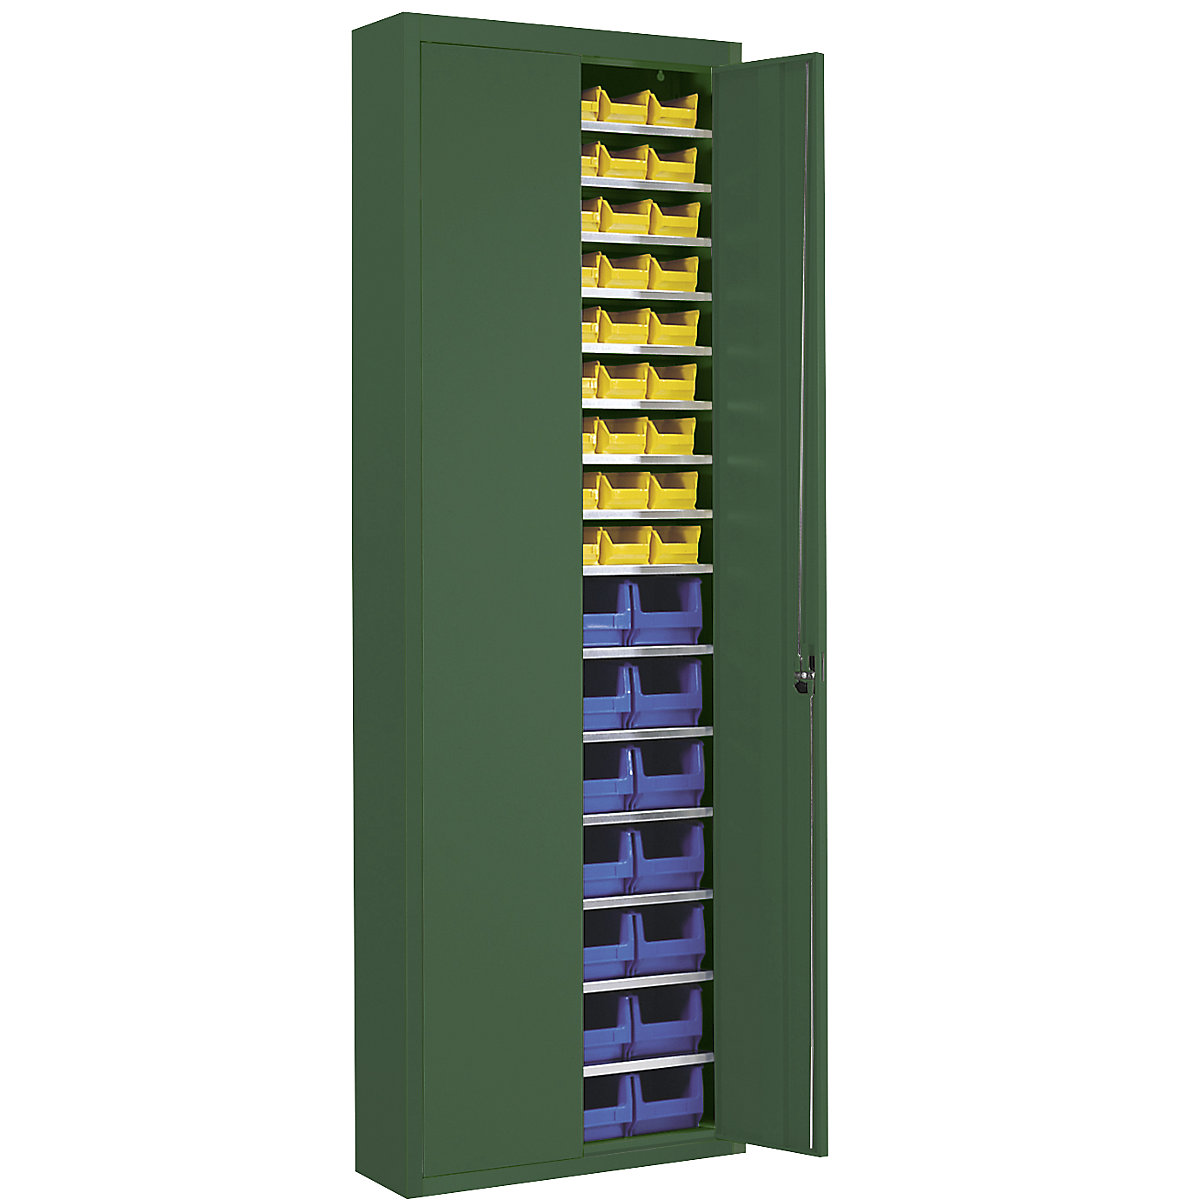 Magazinschrank mit Sichtlagerkästen mauser, HxBxT 2150 x 680 x 280 mm, einfarbig, grün, 82 Kästen-10